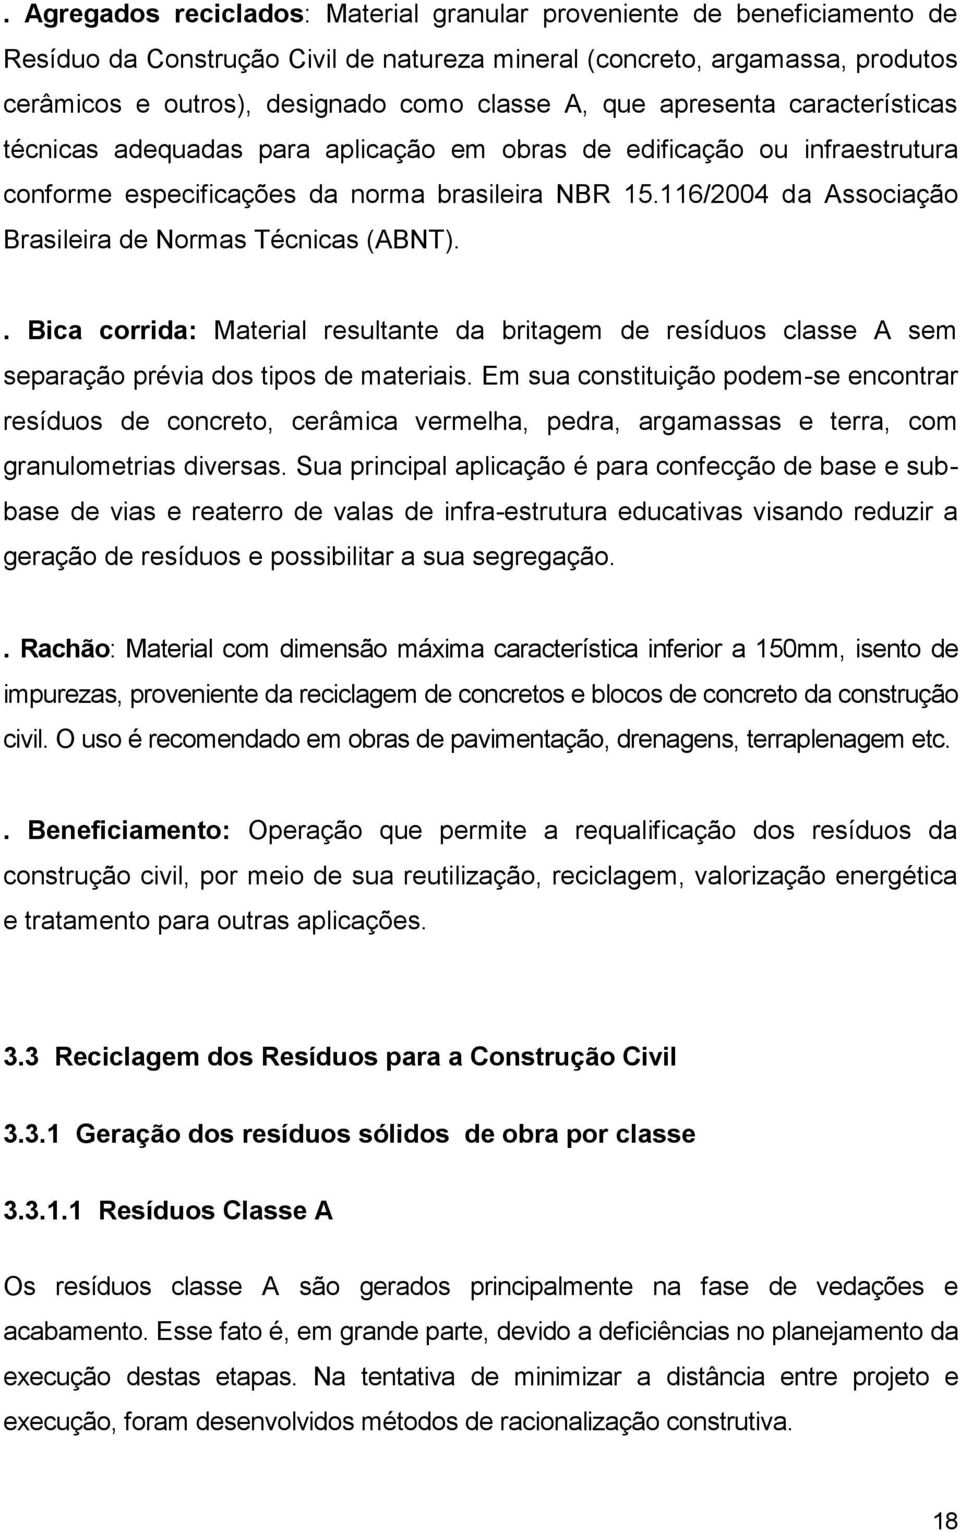 116/2004 da Associação Brasileira de Normas Técnicas (ABNT).. Bica corrida: Material resultante da britagem de resíduos classe A sem separação prévia dos tipos de materiais.